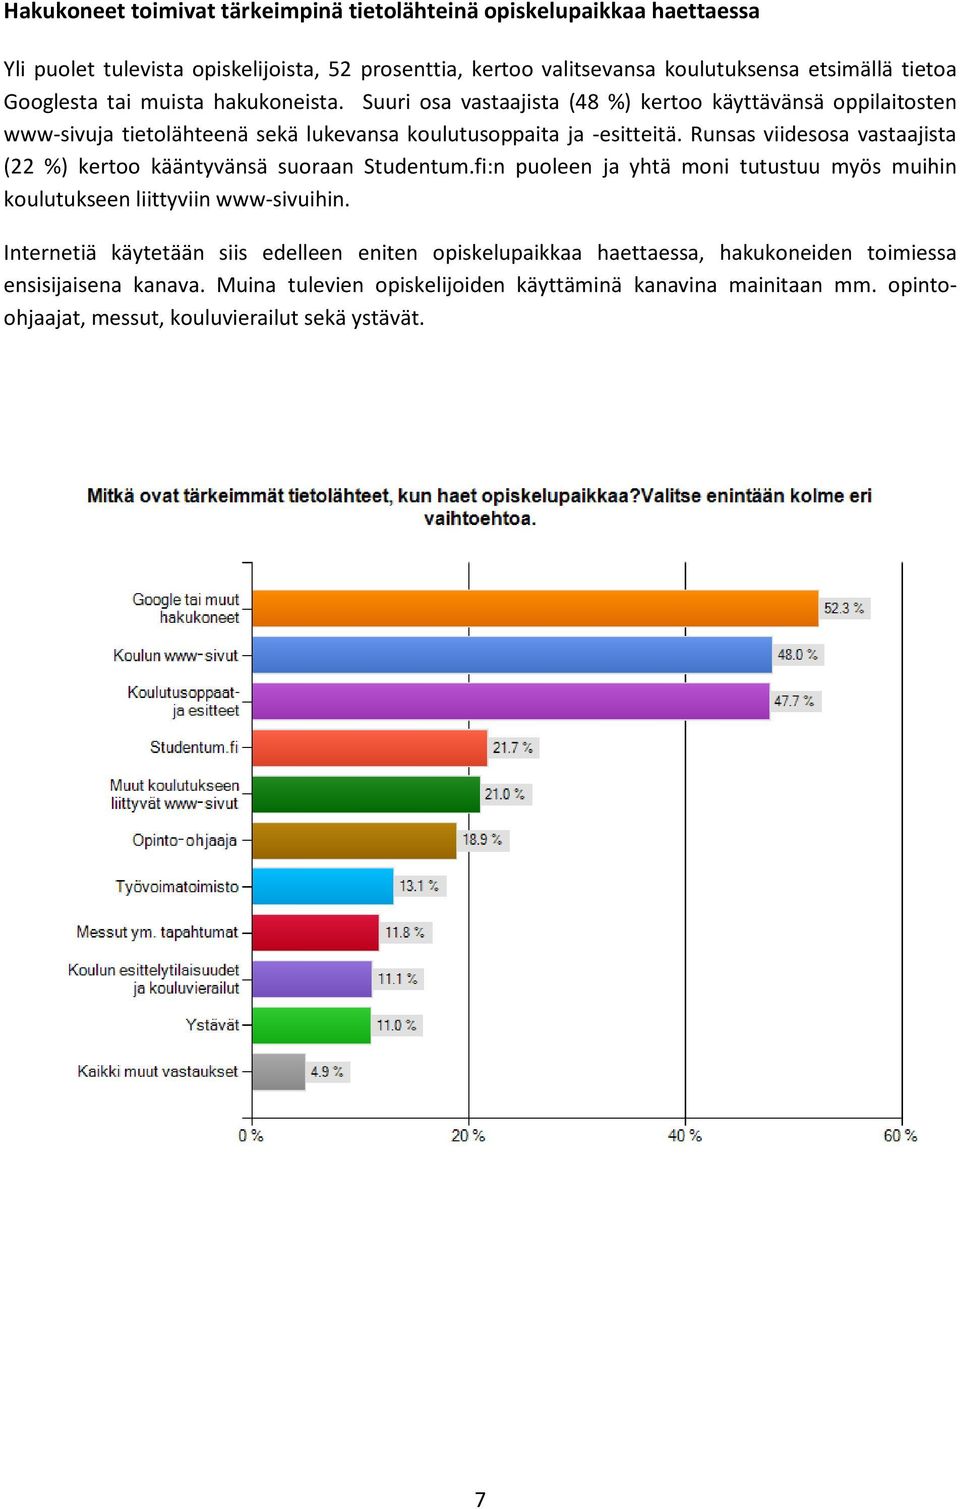 Runsas viidesosa vastaajista (22 %) kertoo kääntyvänsä suoraan Studentum.fi:n puoleen ja yhtä moni tutustuu myös muihin koulutukseen liittyviin www-sivuihin.